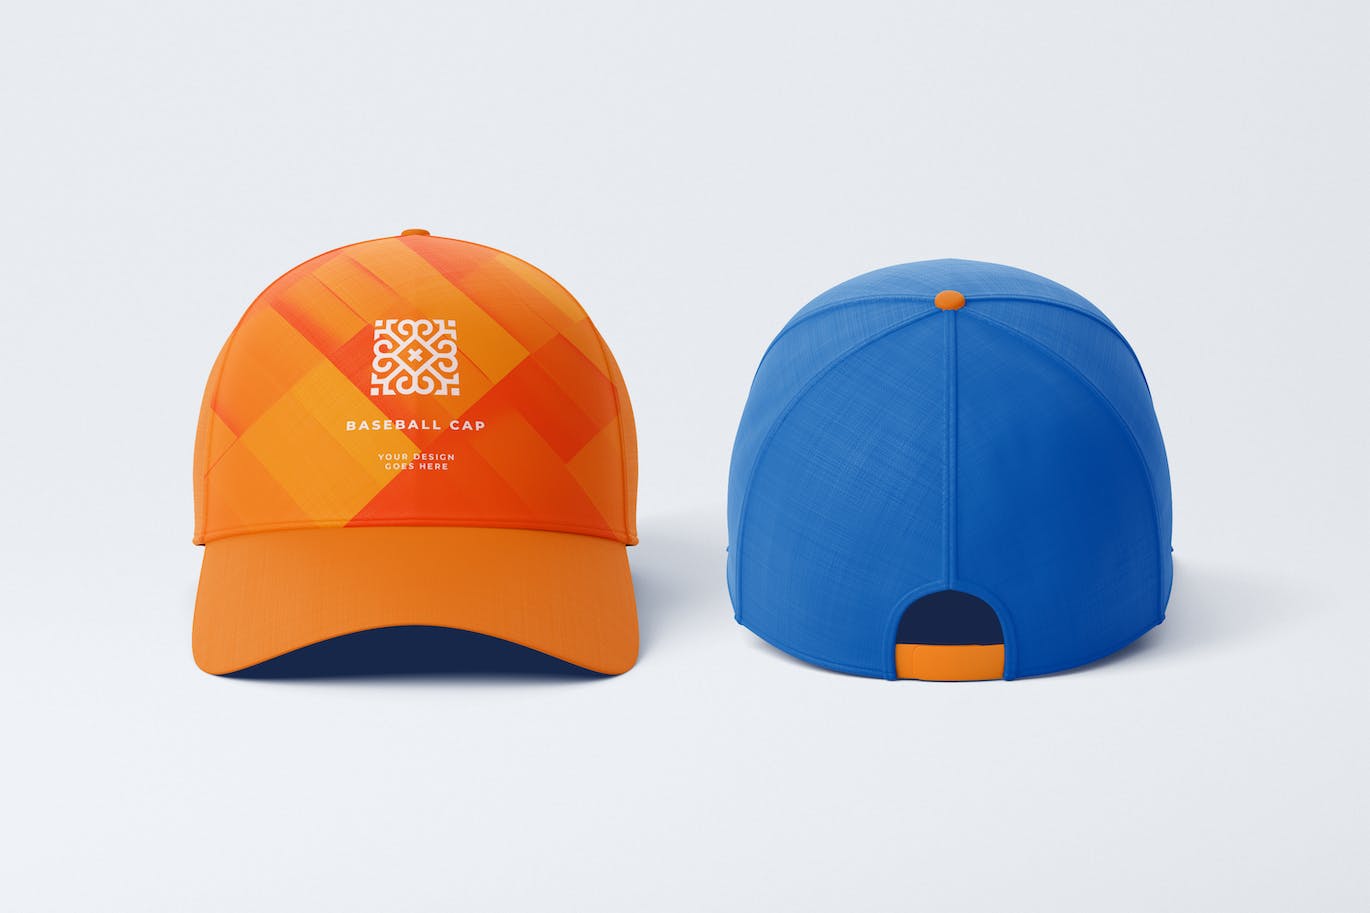 棒球帽运动品牌设计样机图模板 Baseball Cap Mockup 样机素材 第1张